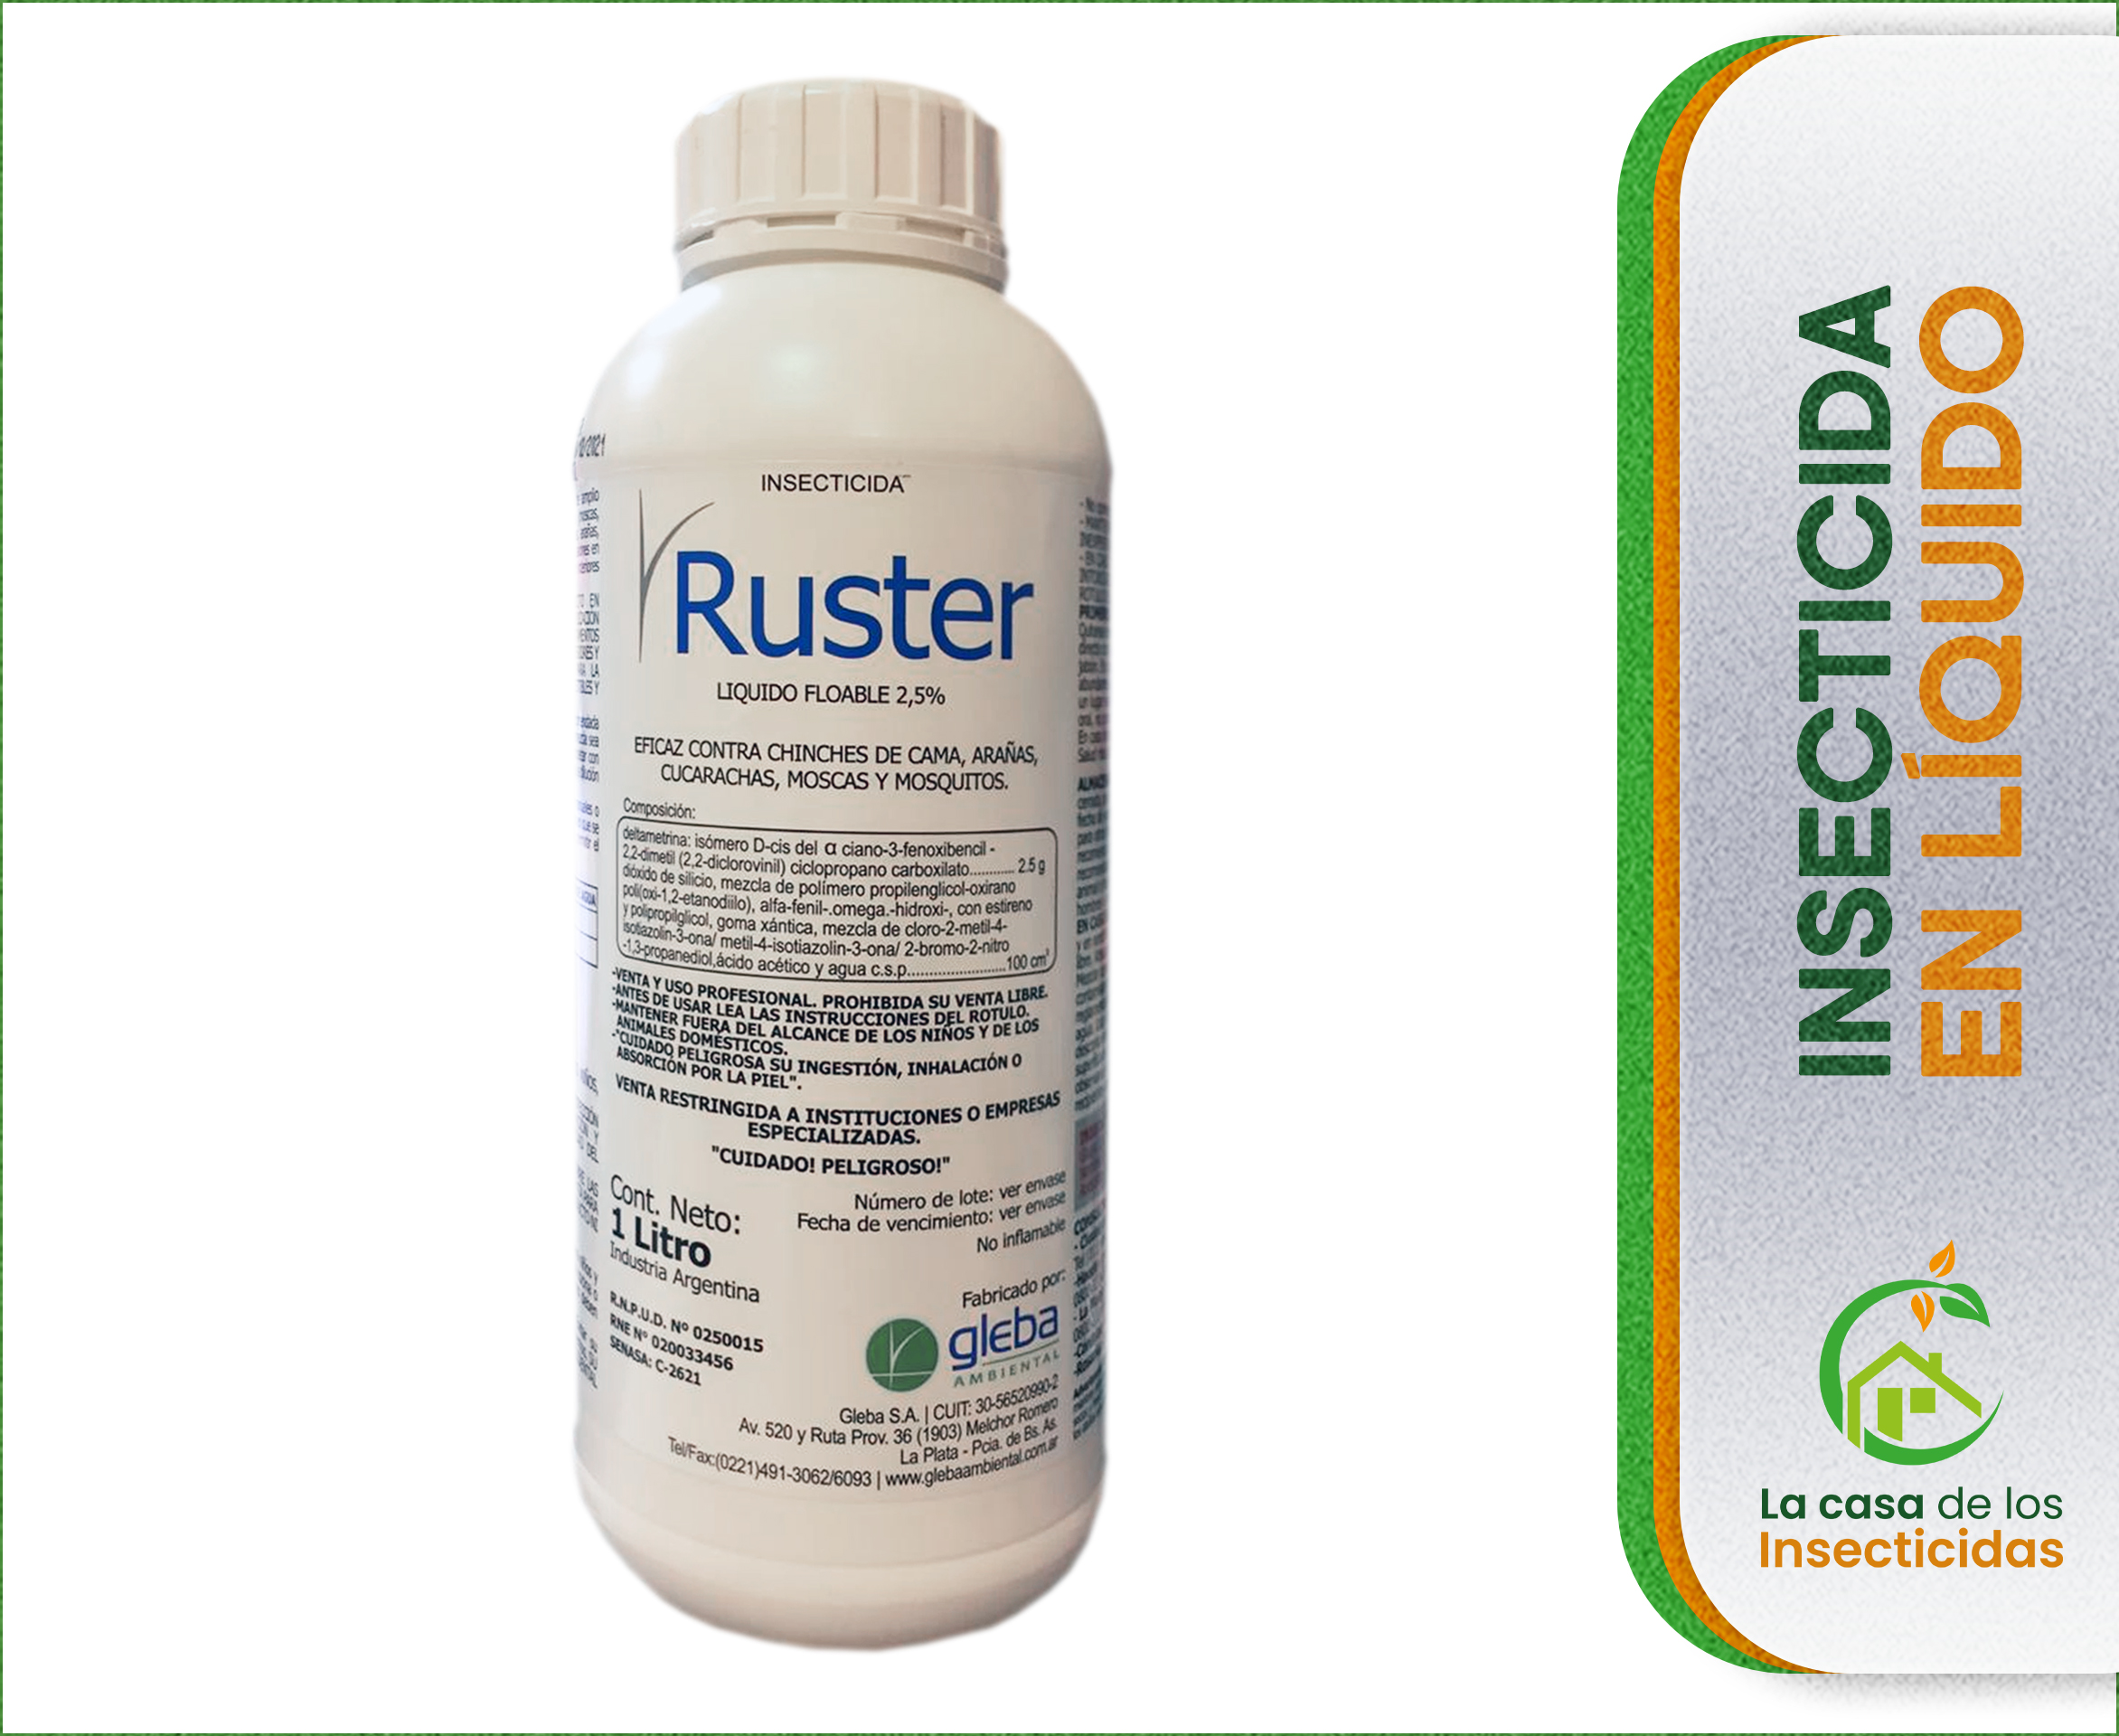 Ruster Insecticida Deltametrina control de plagas x 1 ltr